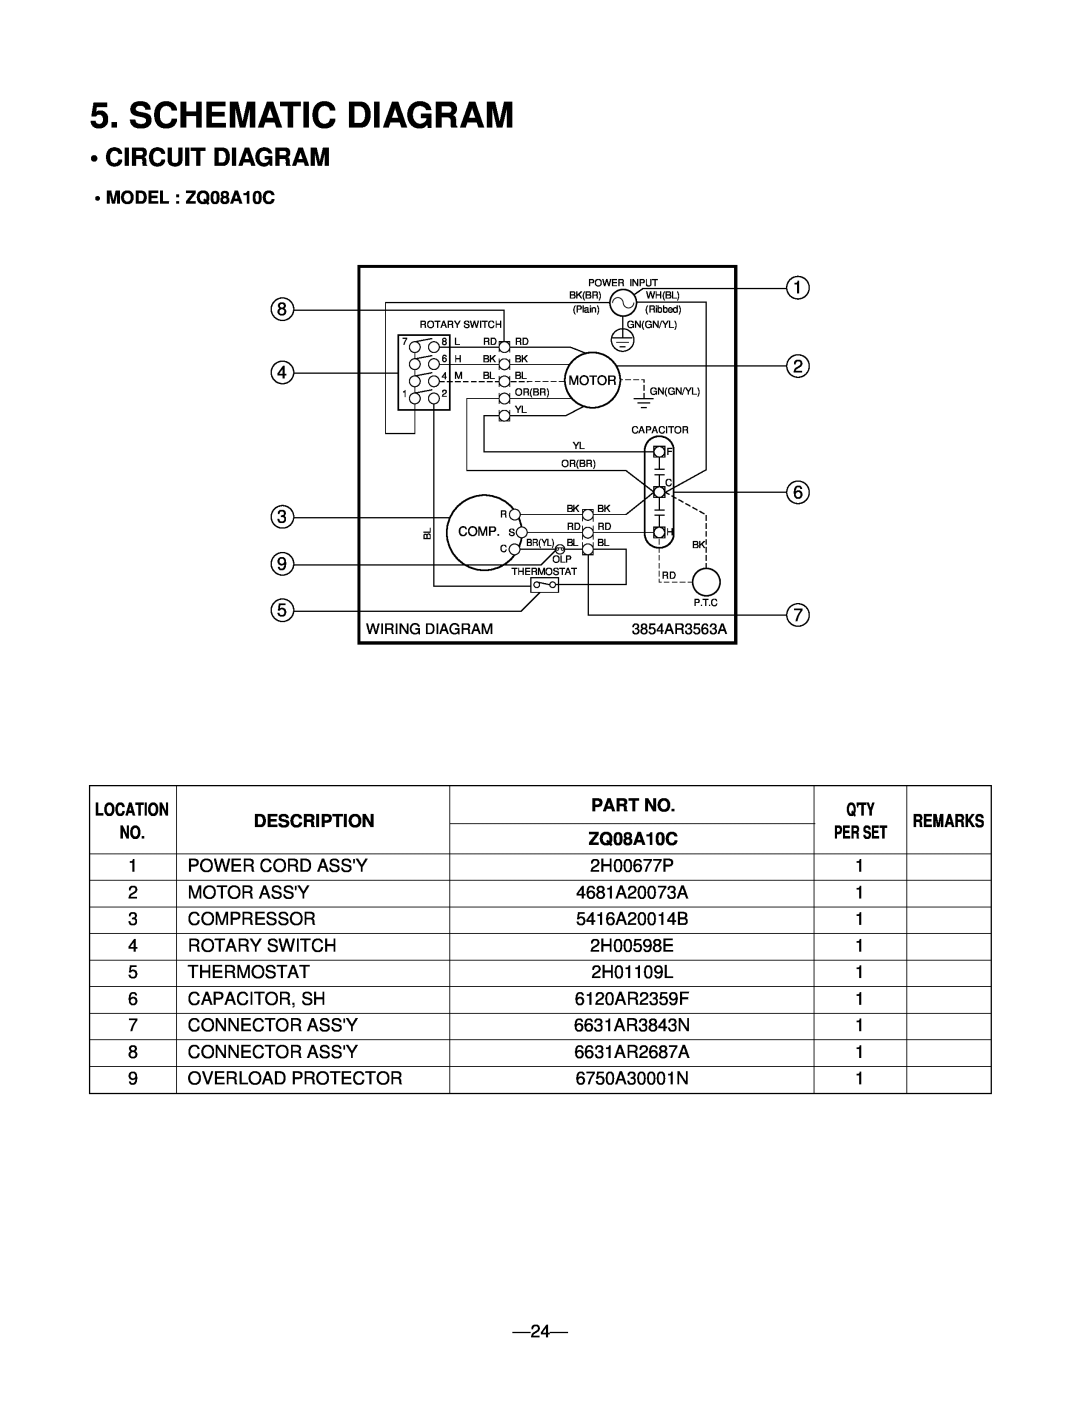 Friedrich manual Schematic Diagram, •Circuit Diagram, •MODEL : ZQ08A10C, Description, Part No 